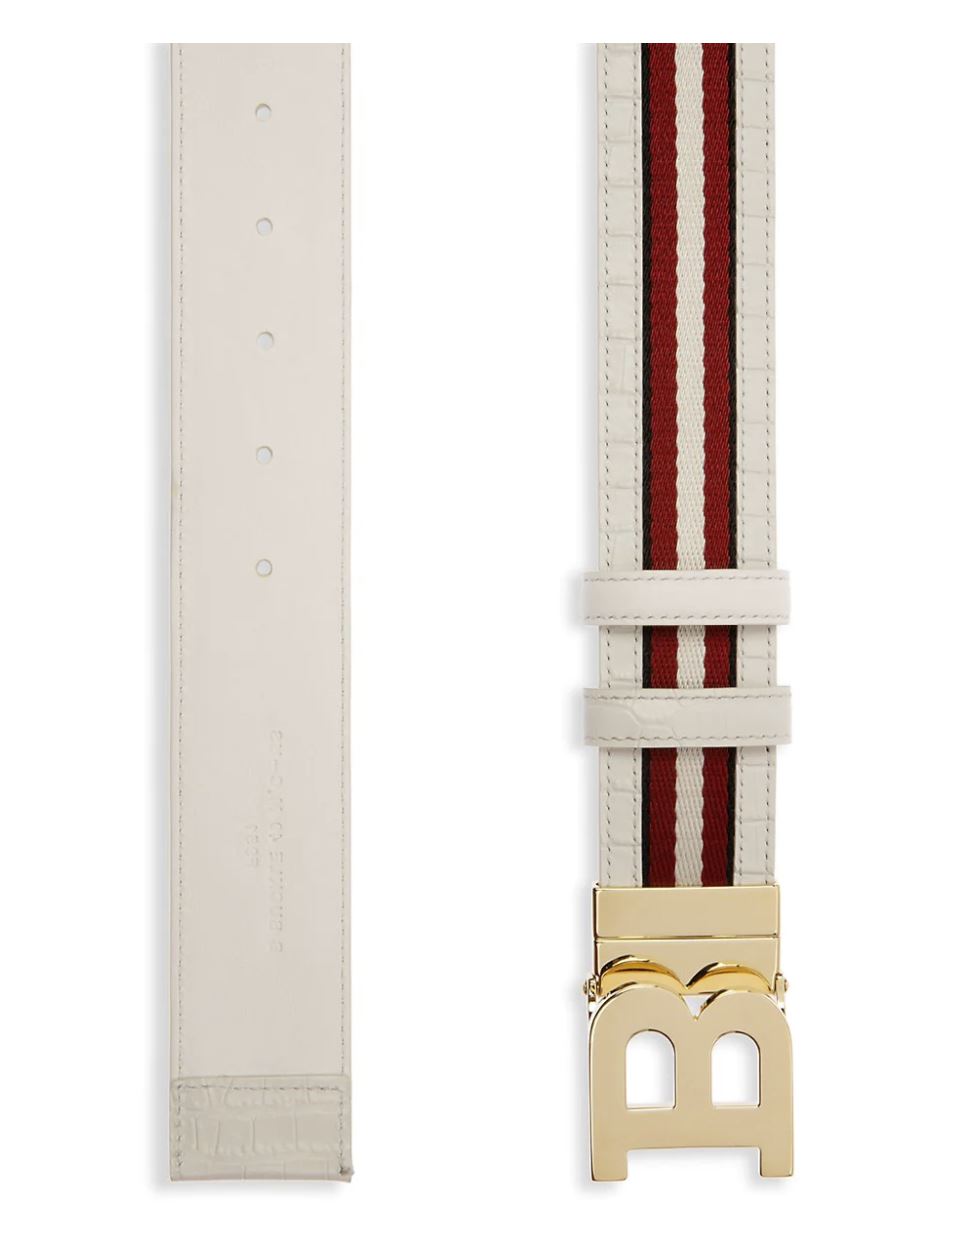 Neuer 300-Dollar-Bally-Herrengürtel aus doppelseitigem Bising-Leder in Rot/Weiß, Größe 44/110 